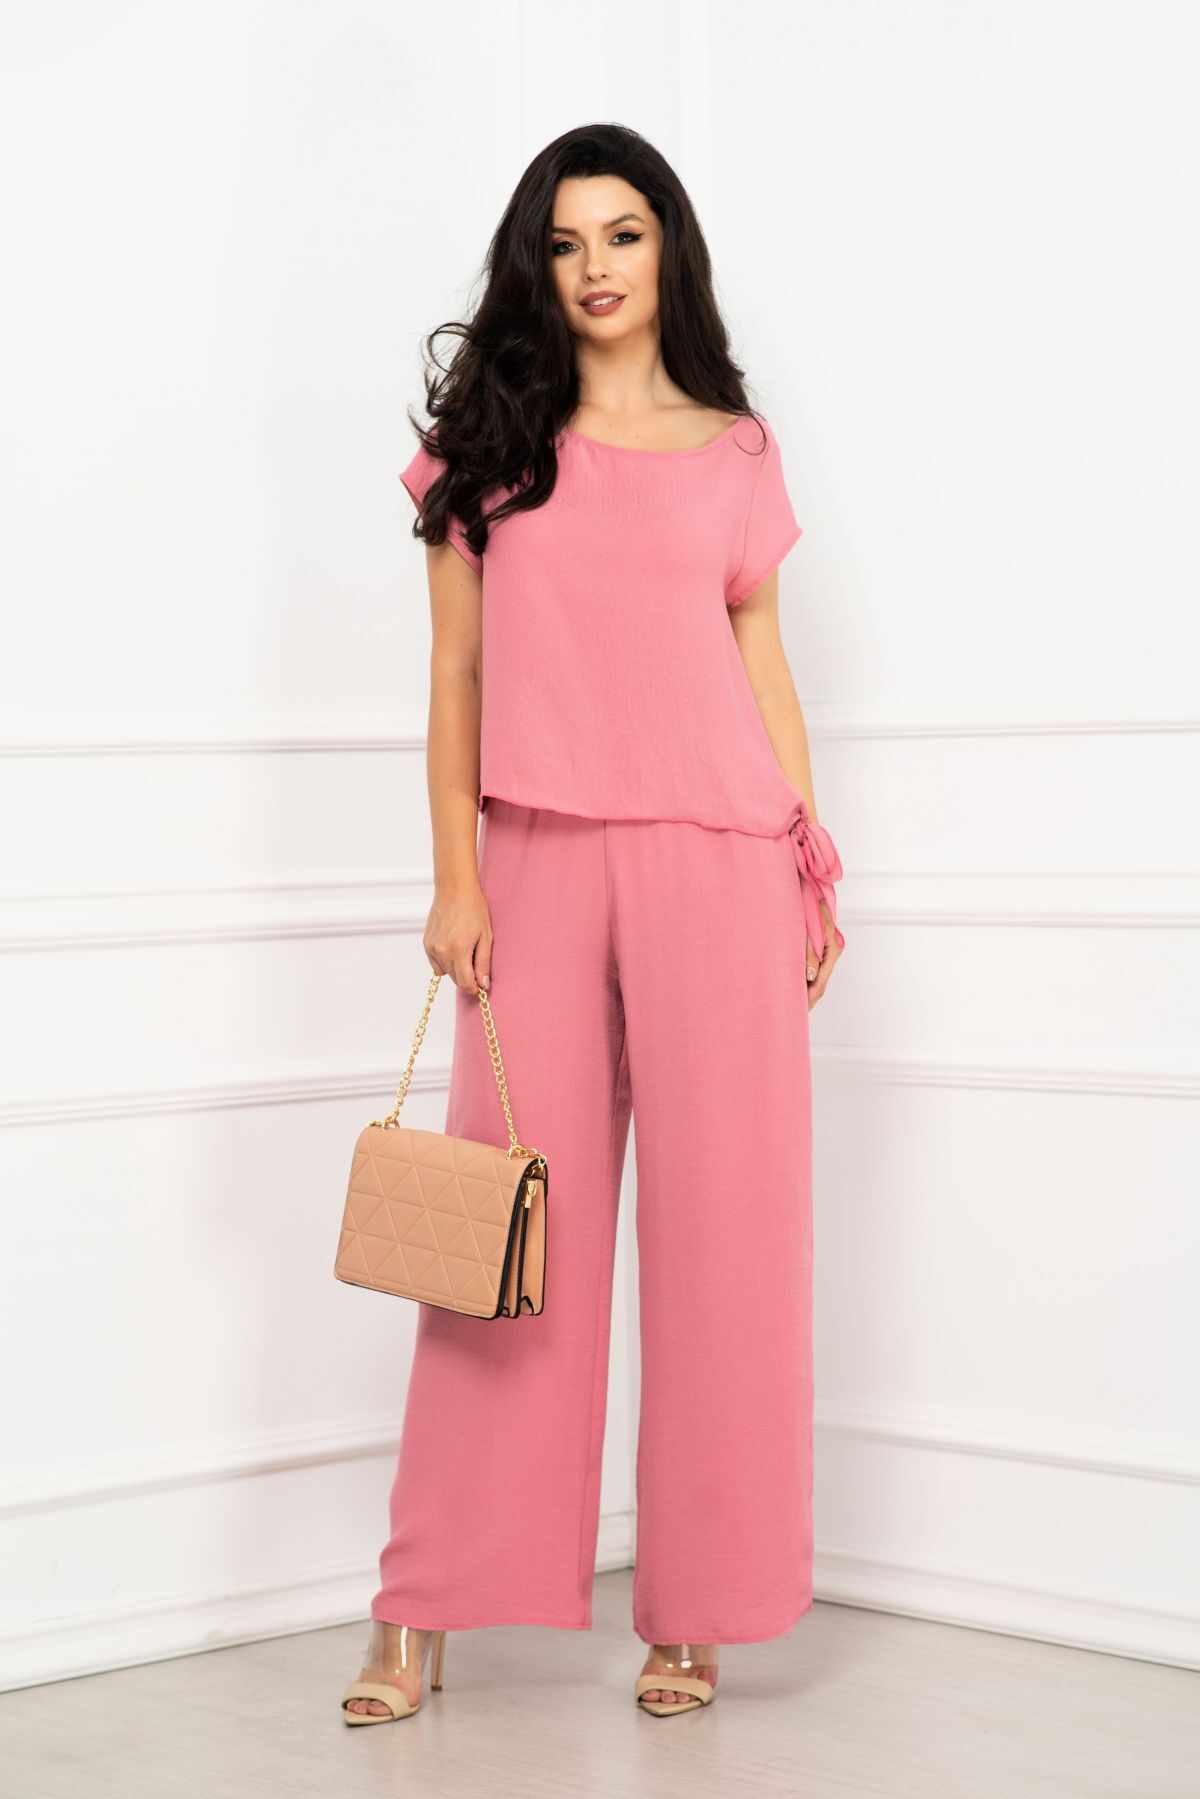 Compleu elegant Elena roz cu pantaloni evazati si bluza cu nod By InPuff